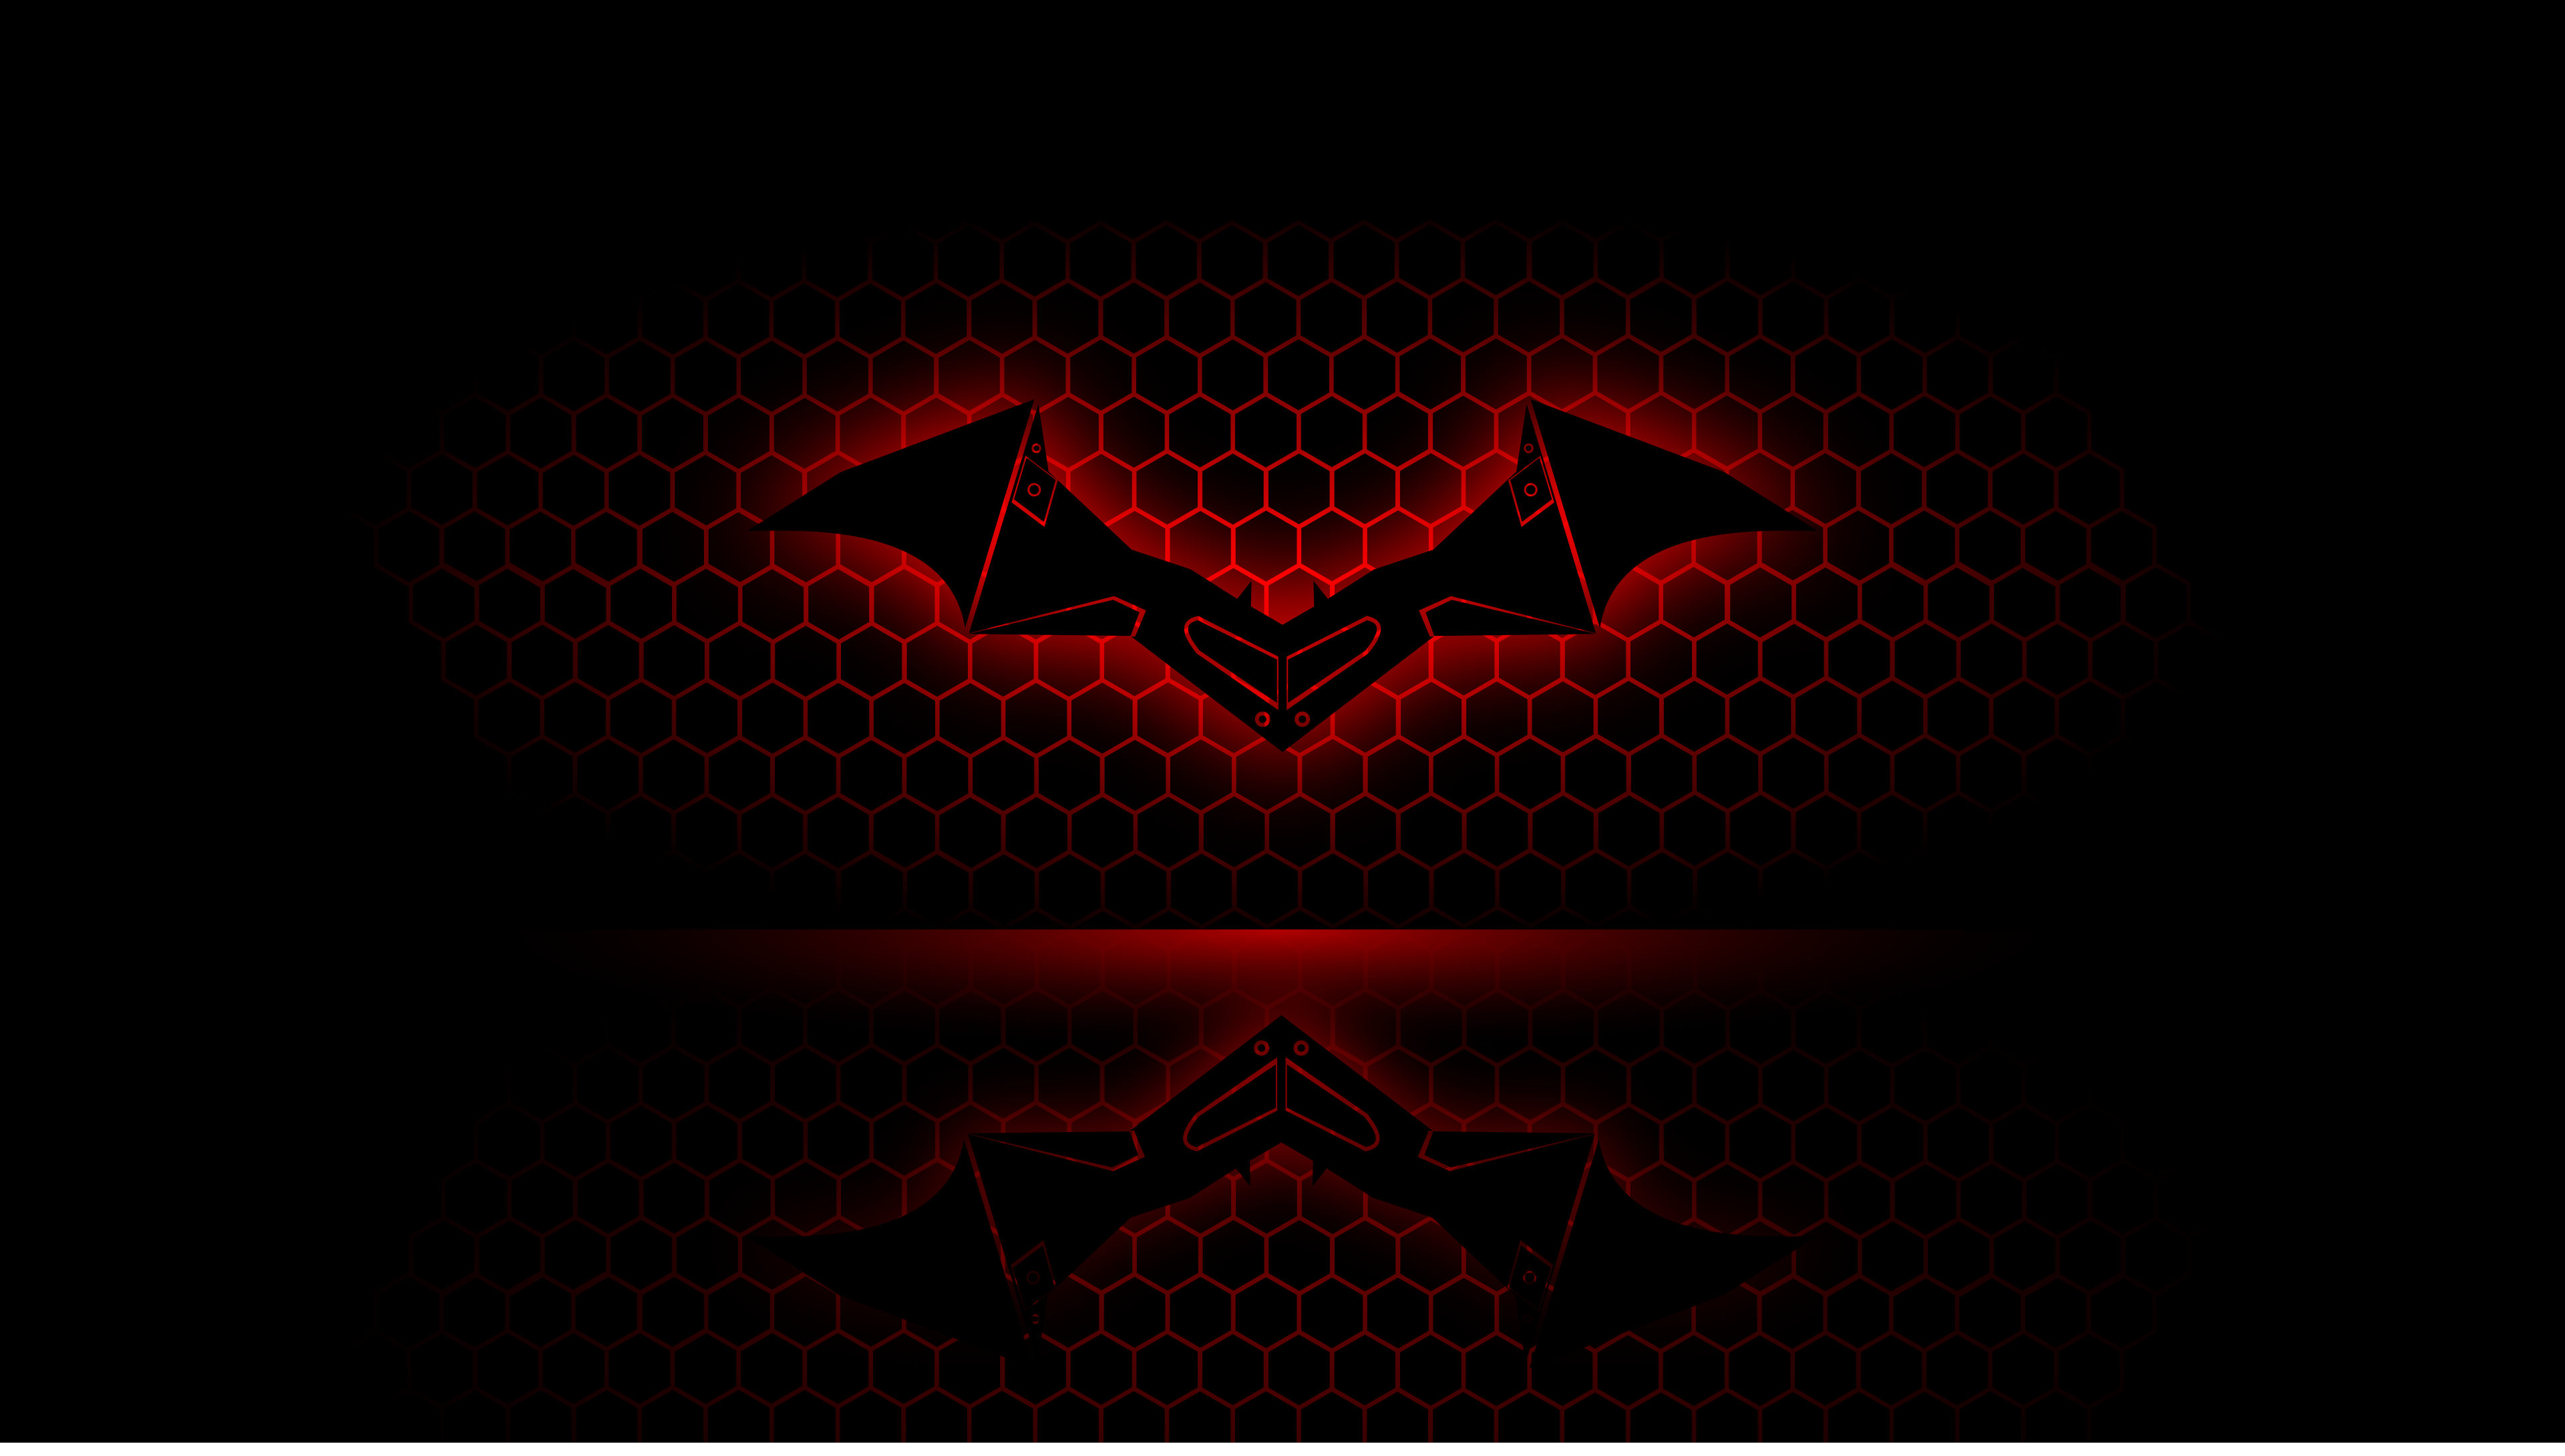 28+] The Batman Logo Wallpapers - WallpaperSafari